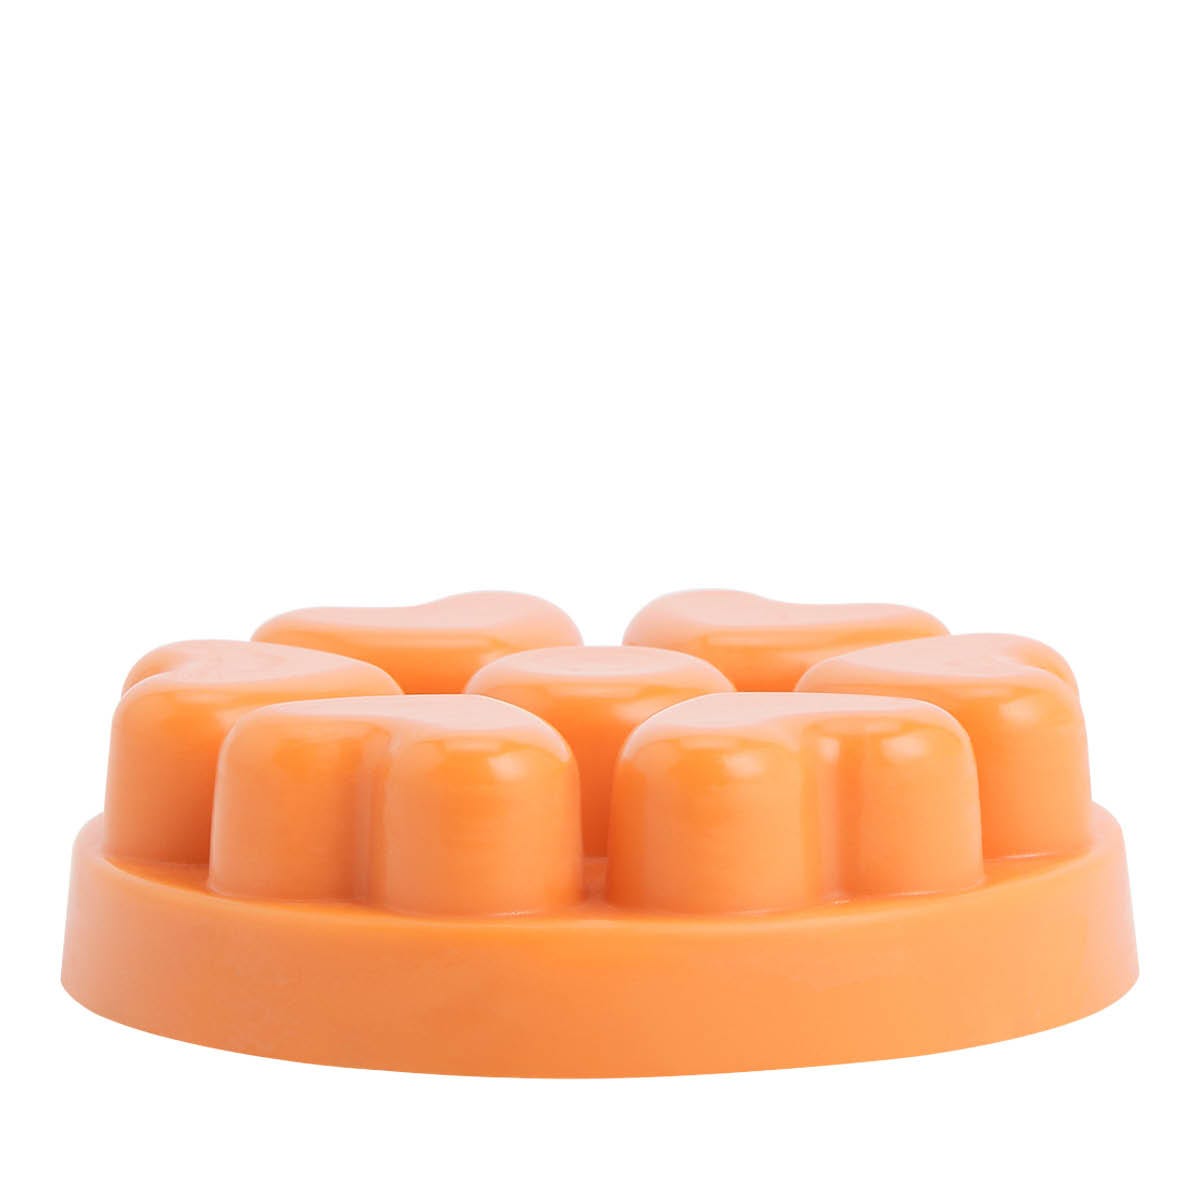 Apricot Peach Preserve Scent Plus® Heart Melts - PartyLite US